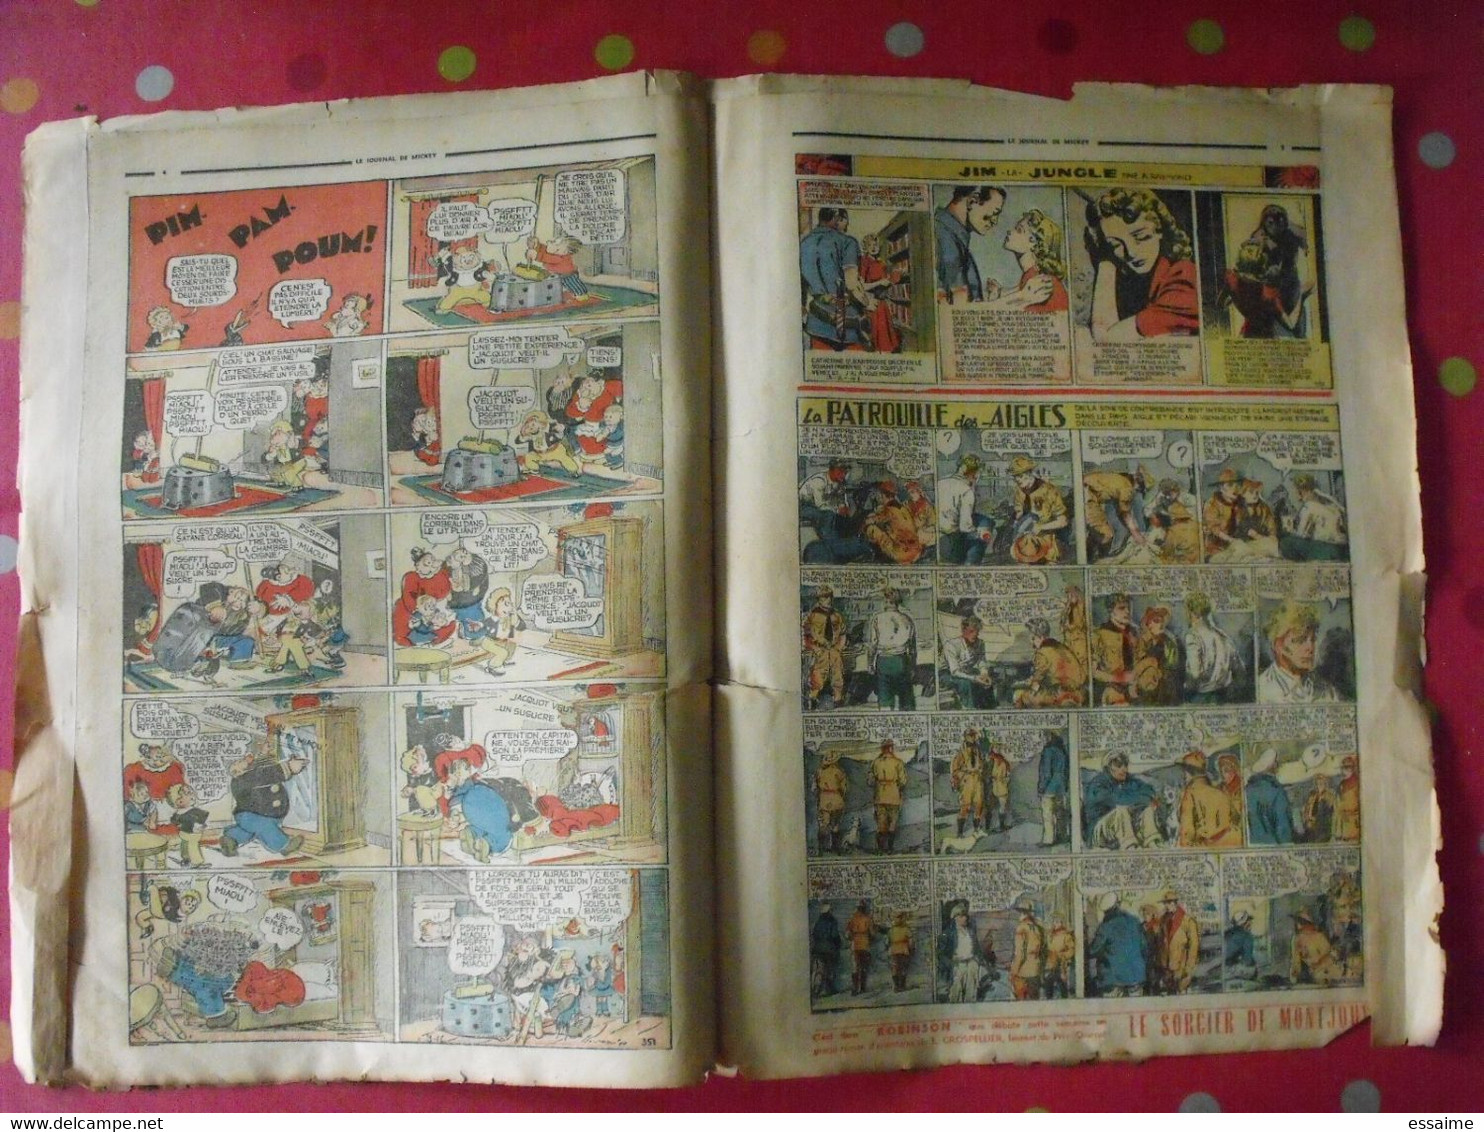 Journal De Mickey Et Hop-là Réunis. N° 351 Du 5 Octobre 1941. Prince Vaillant - Journal De Mickey